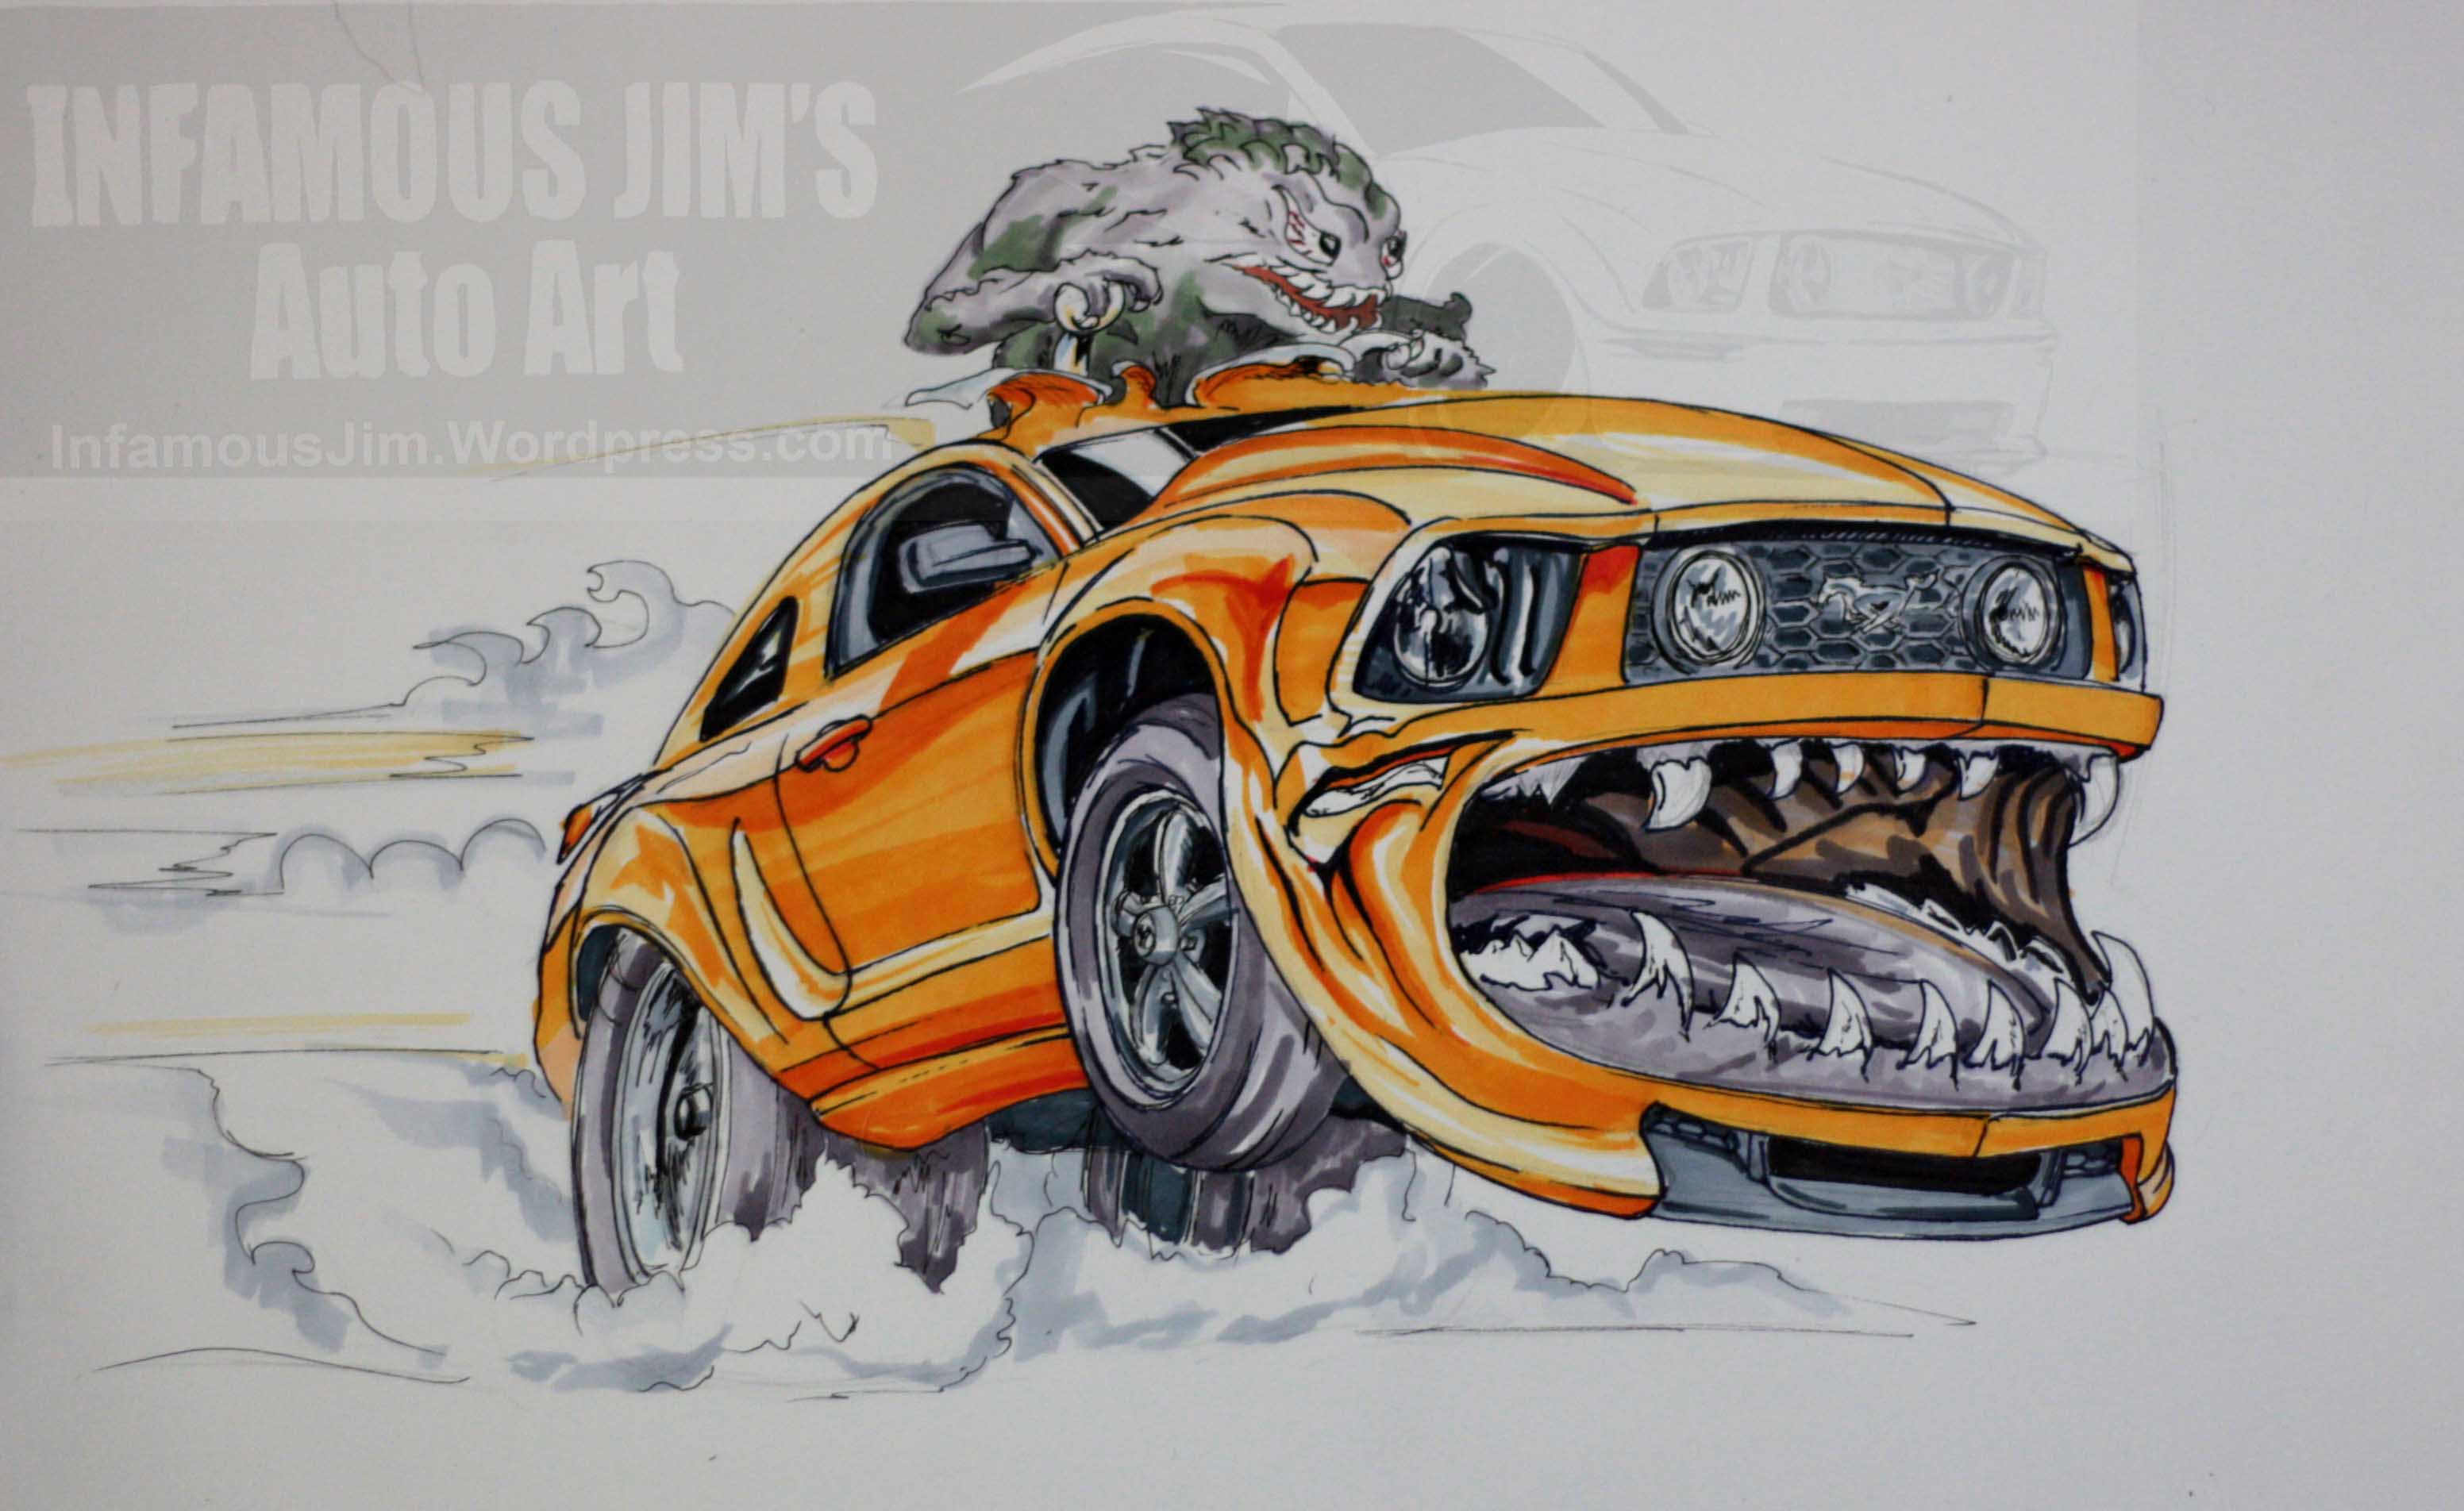 Sketches | Infamous Jims Auto Art - Sketches, Designs, Fine Art